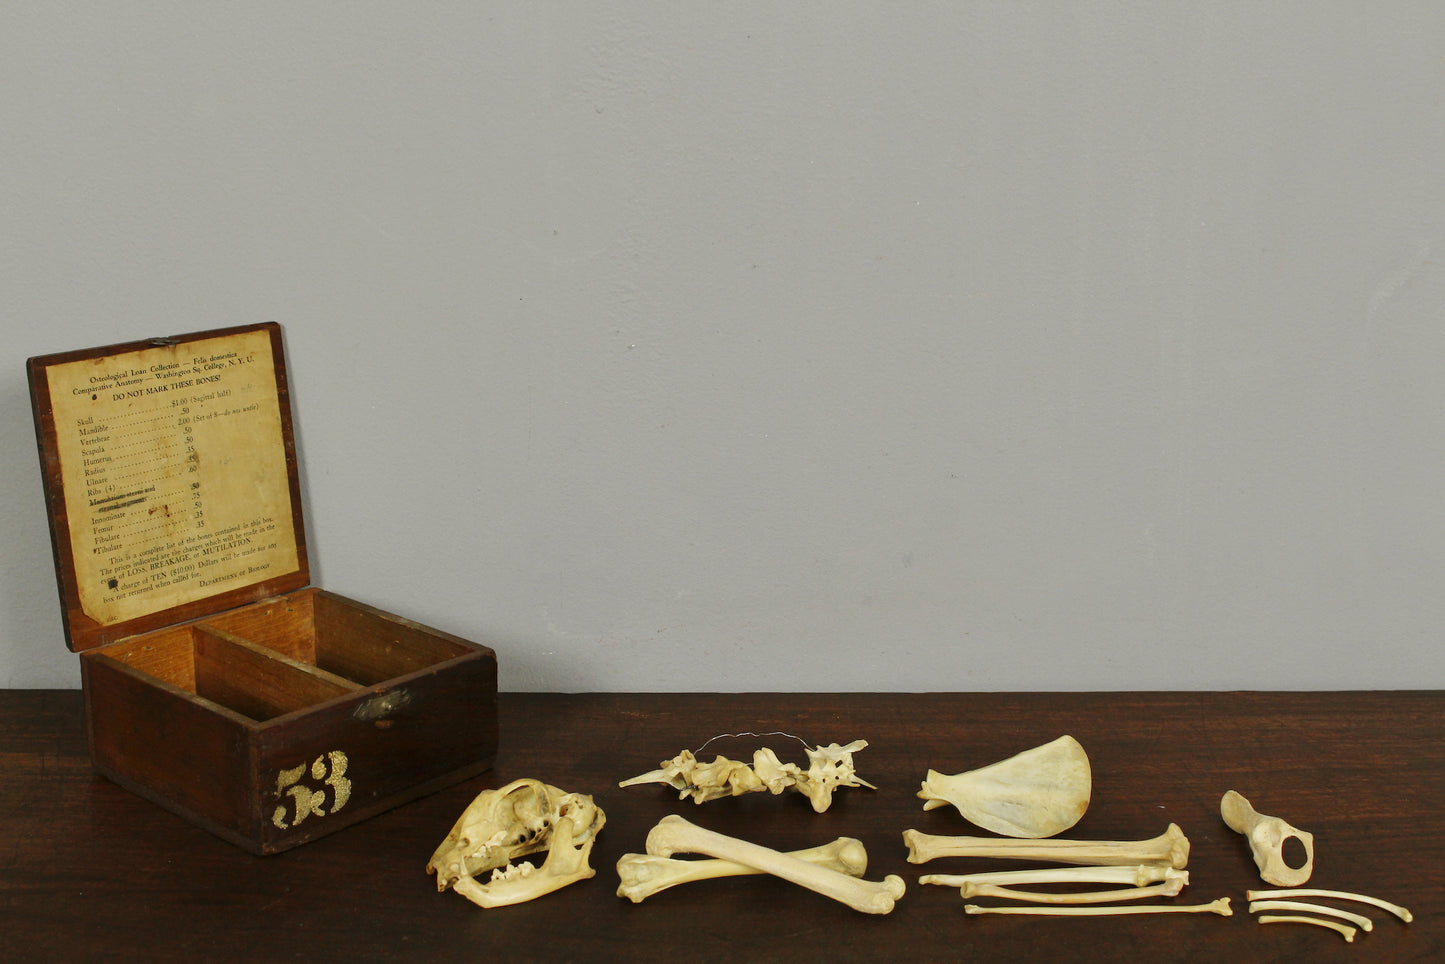 NYU Medical Study Cat Skeleton With Box